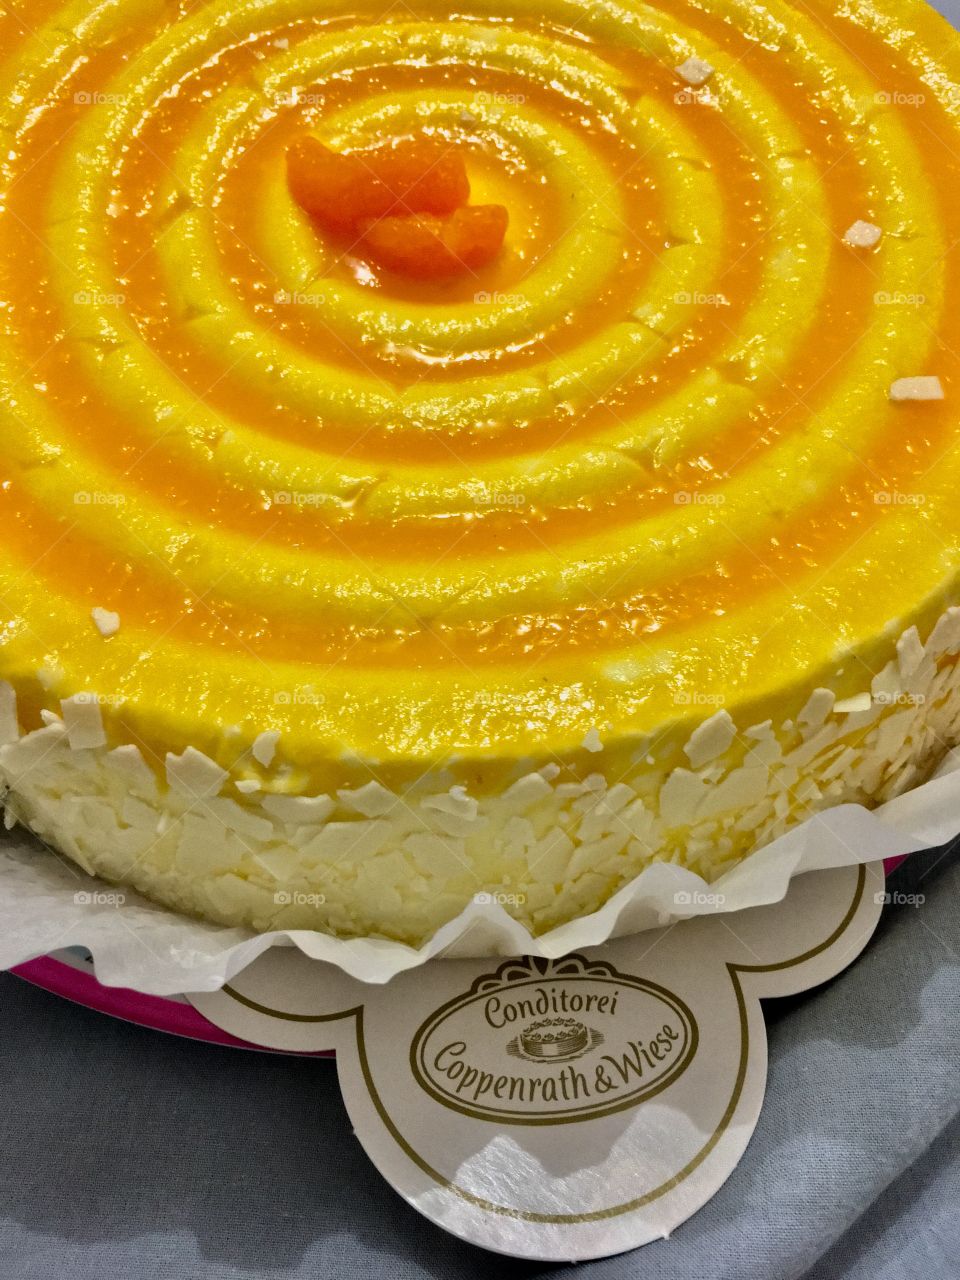 Mandarin Cake von Coppenrath & Wiese🎂